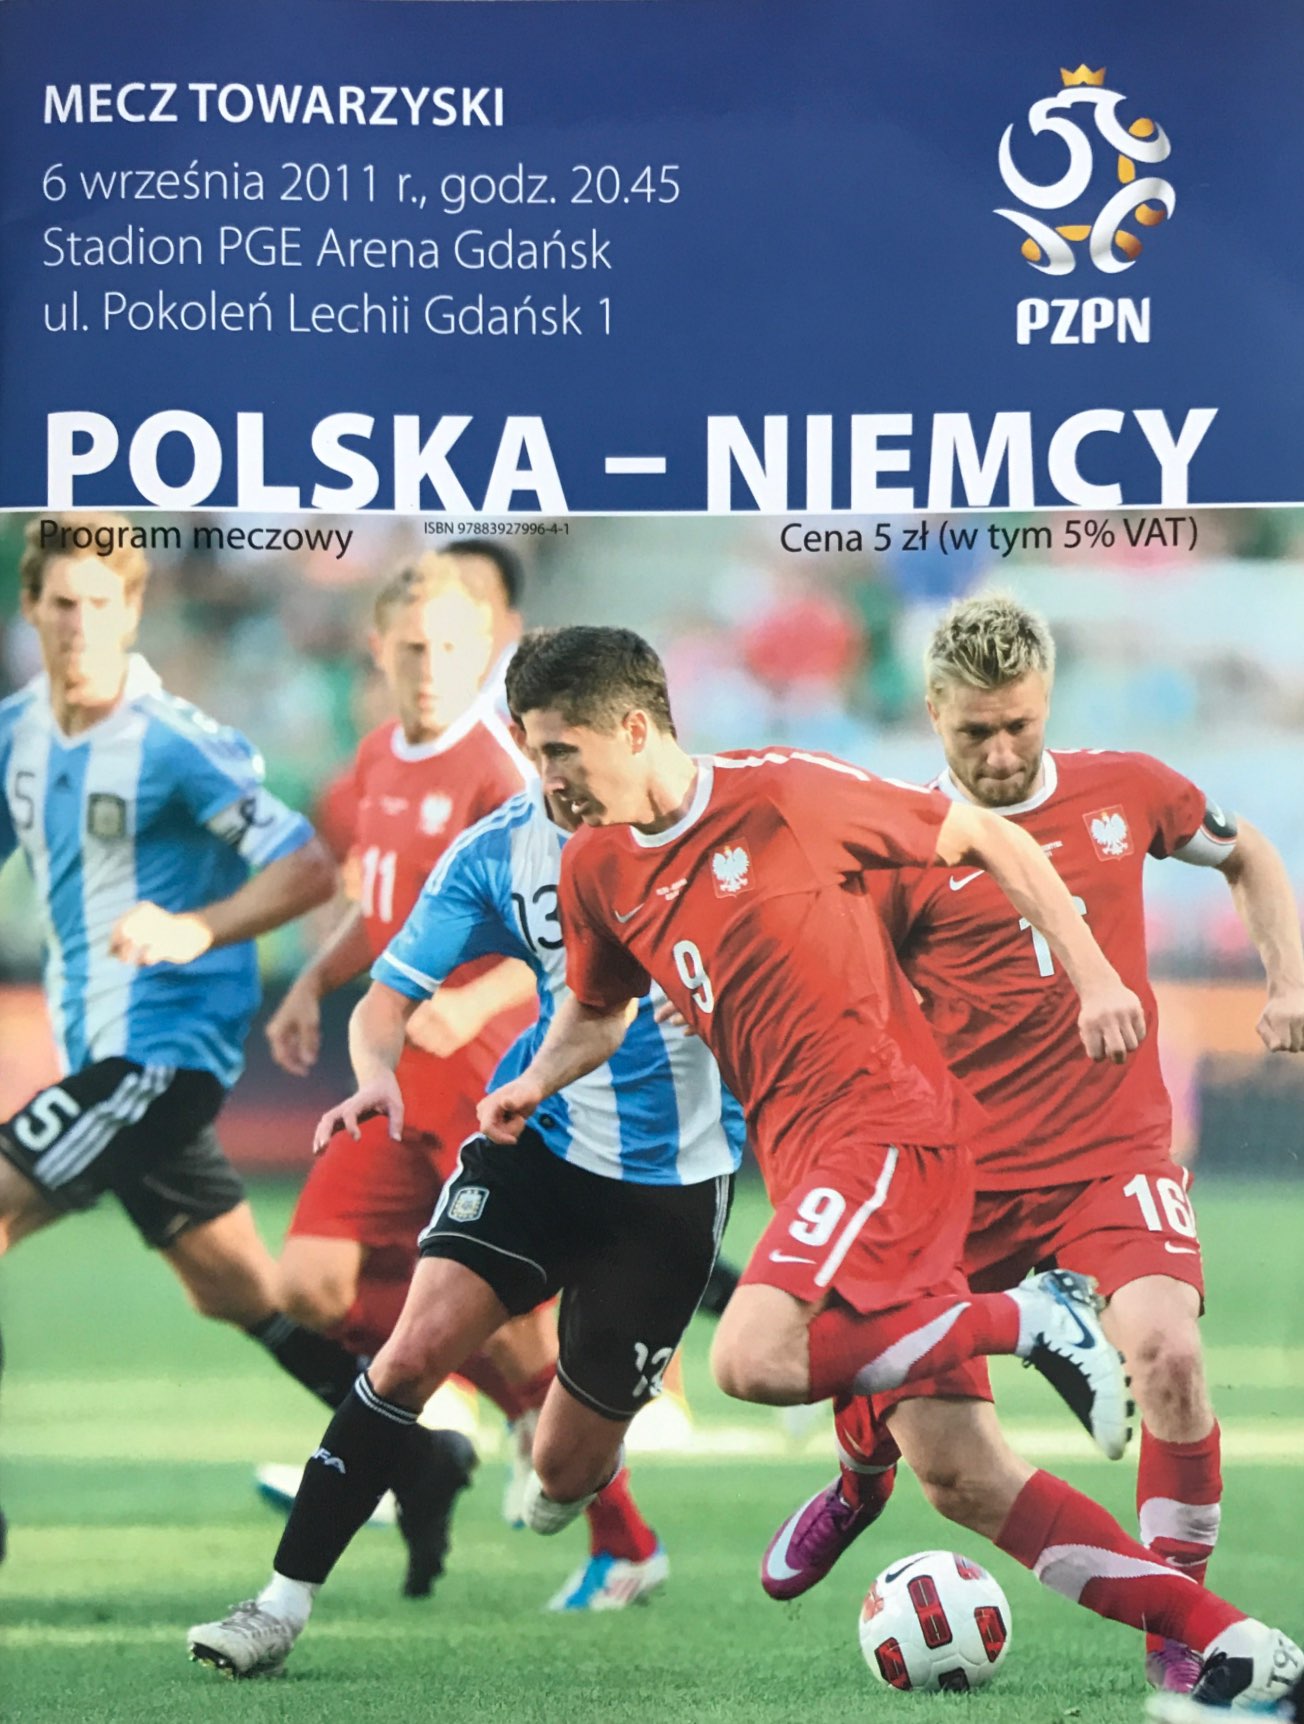 Program meczowy Polska - Niemcy 2:2 (06.09.2011)